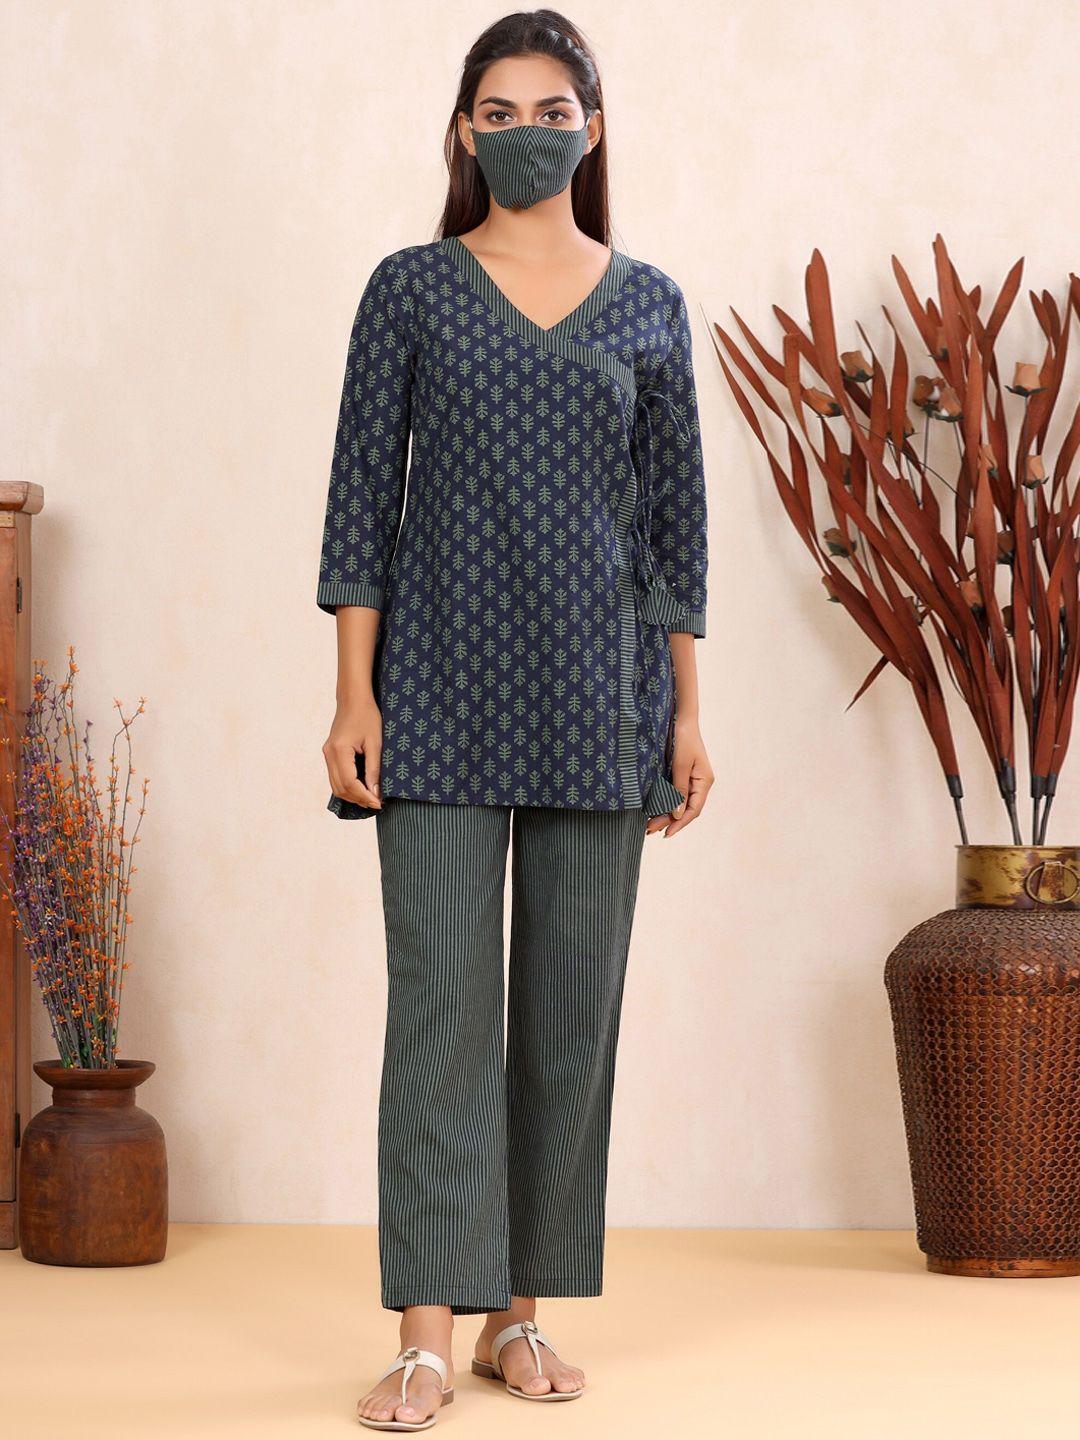 mirari ethnic motifs printed top & pyjamas night suit